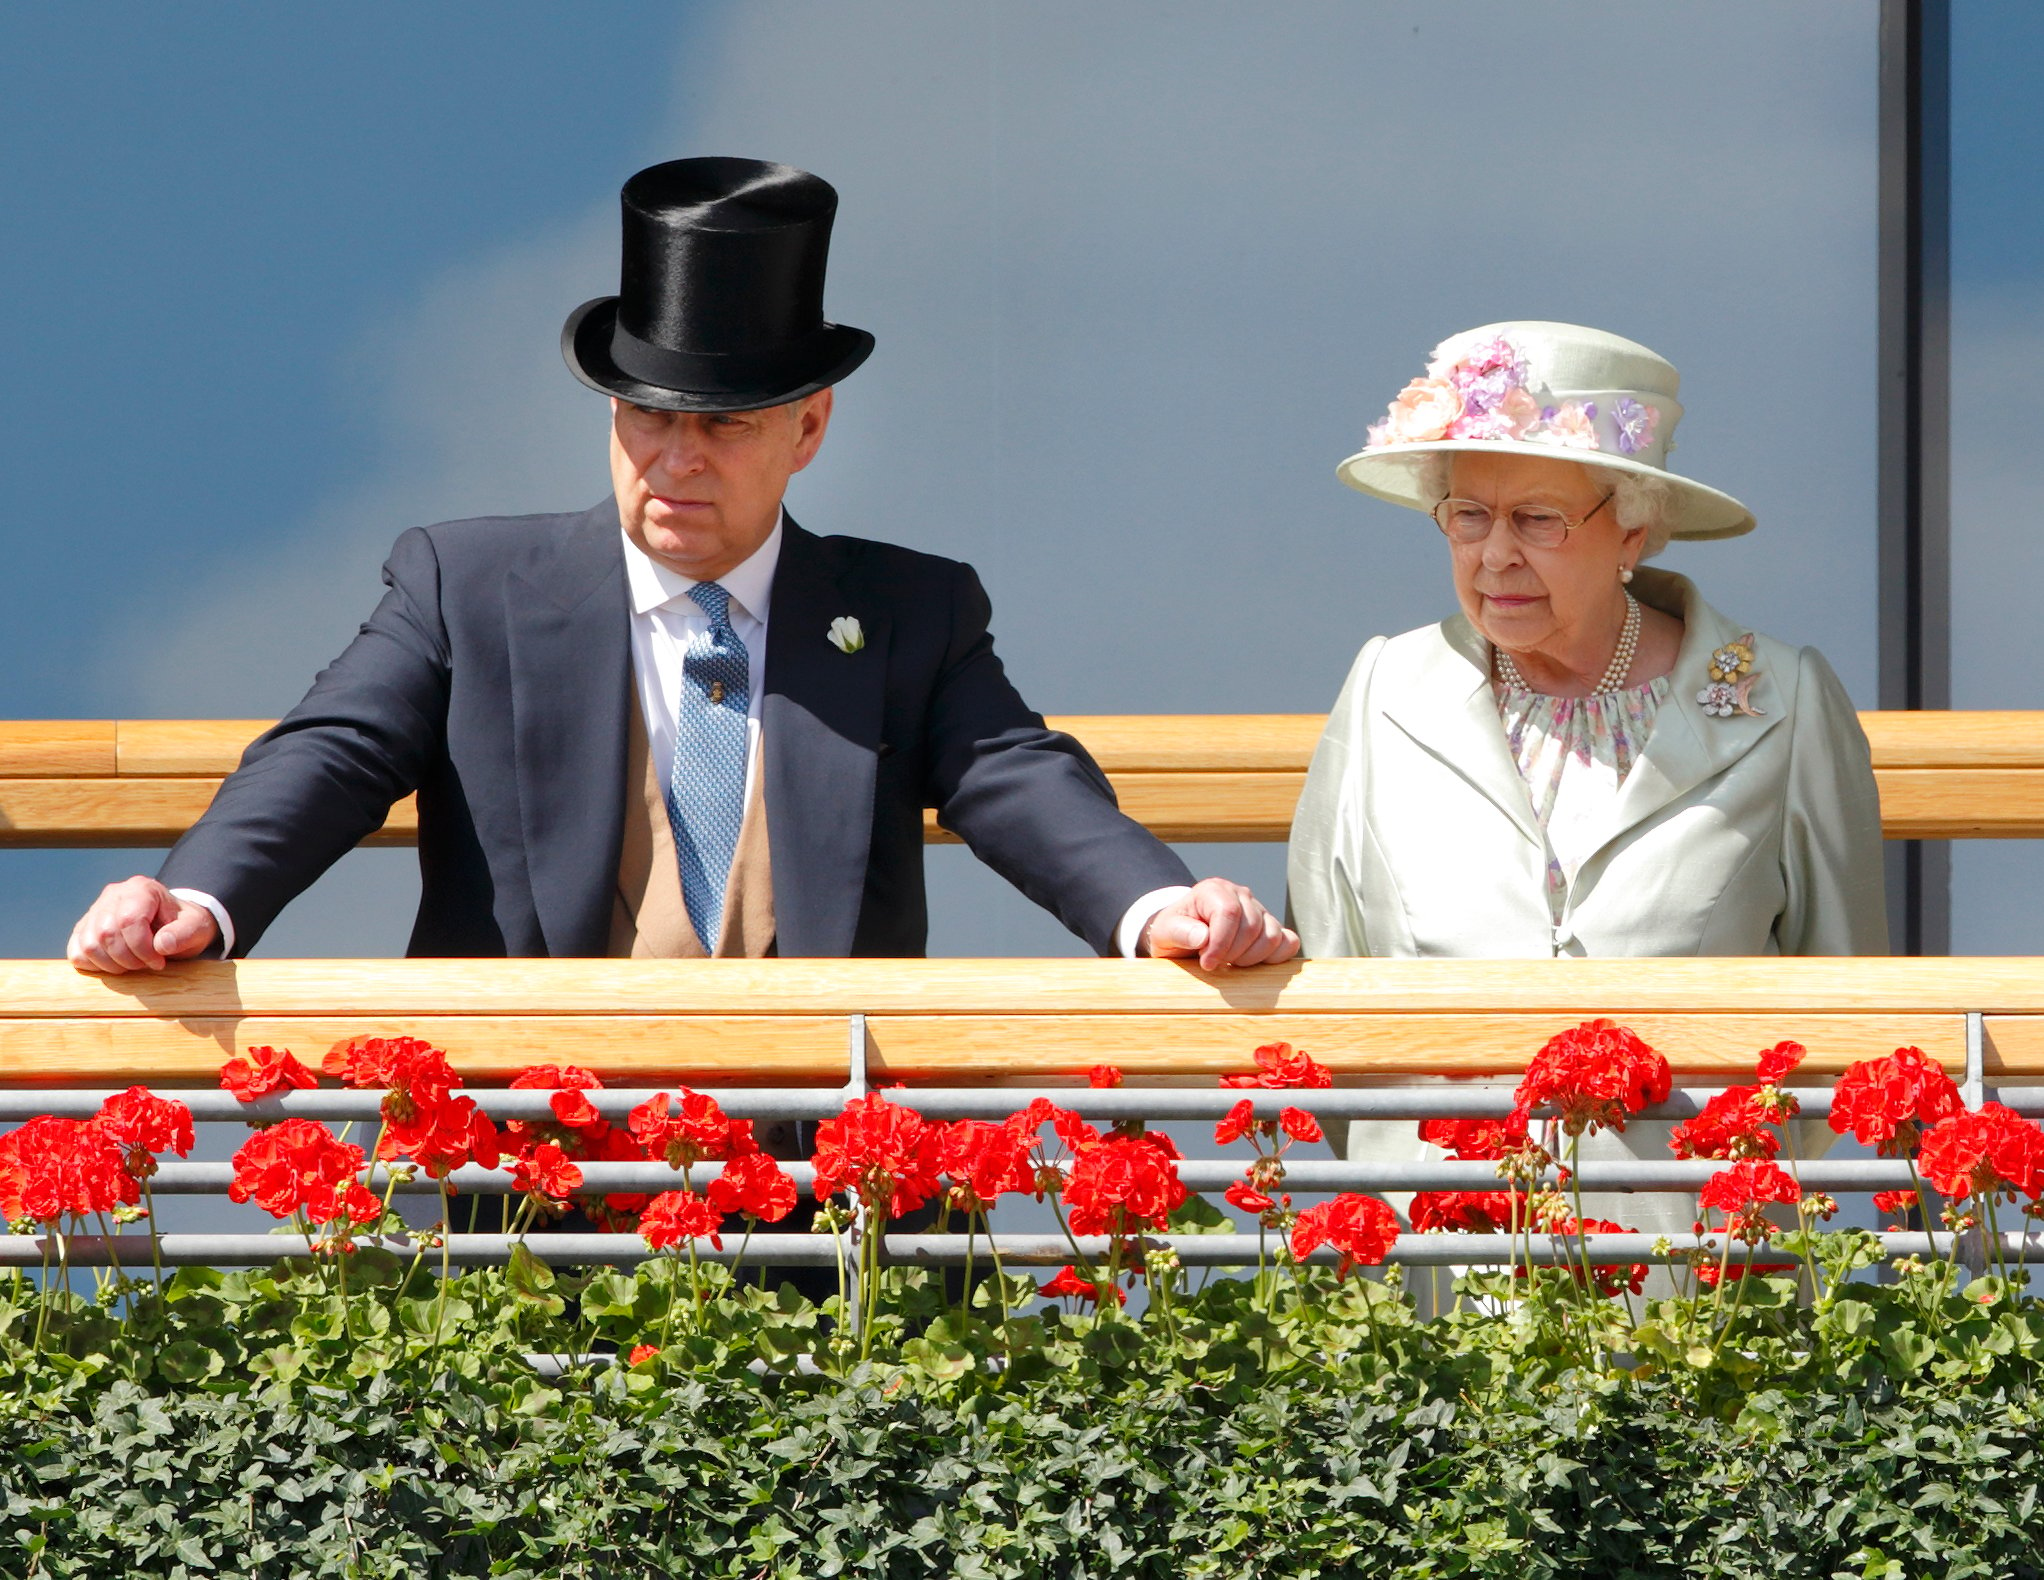  Prince Andrew and Queen Elizabeth II